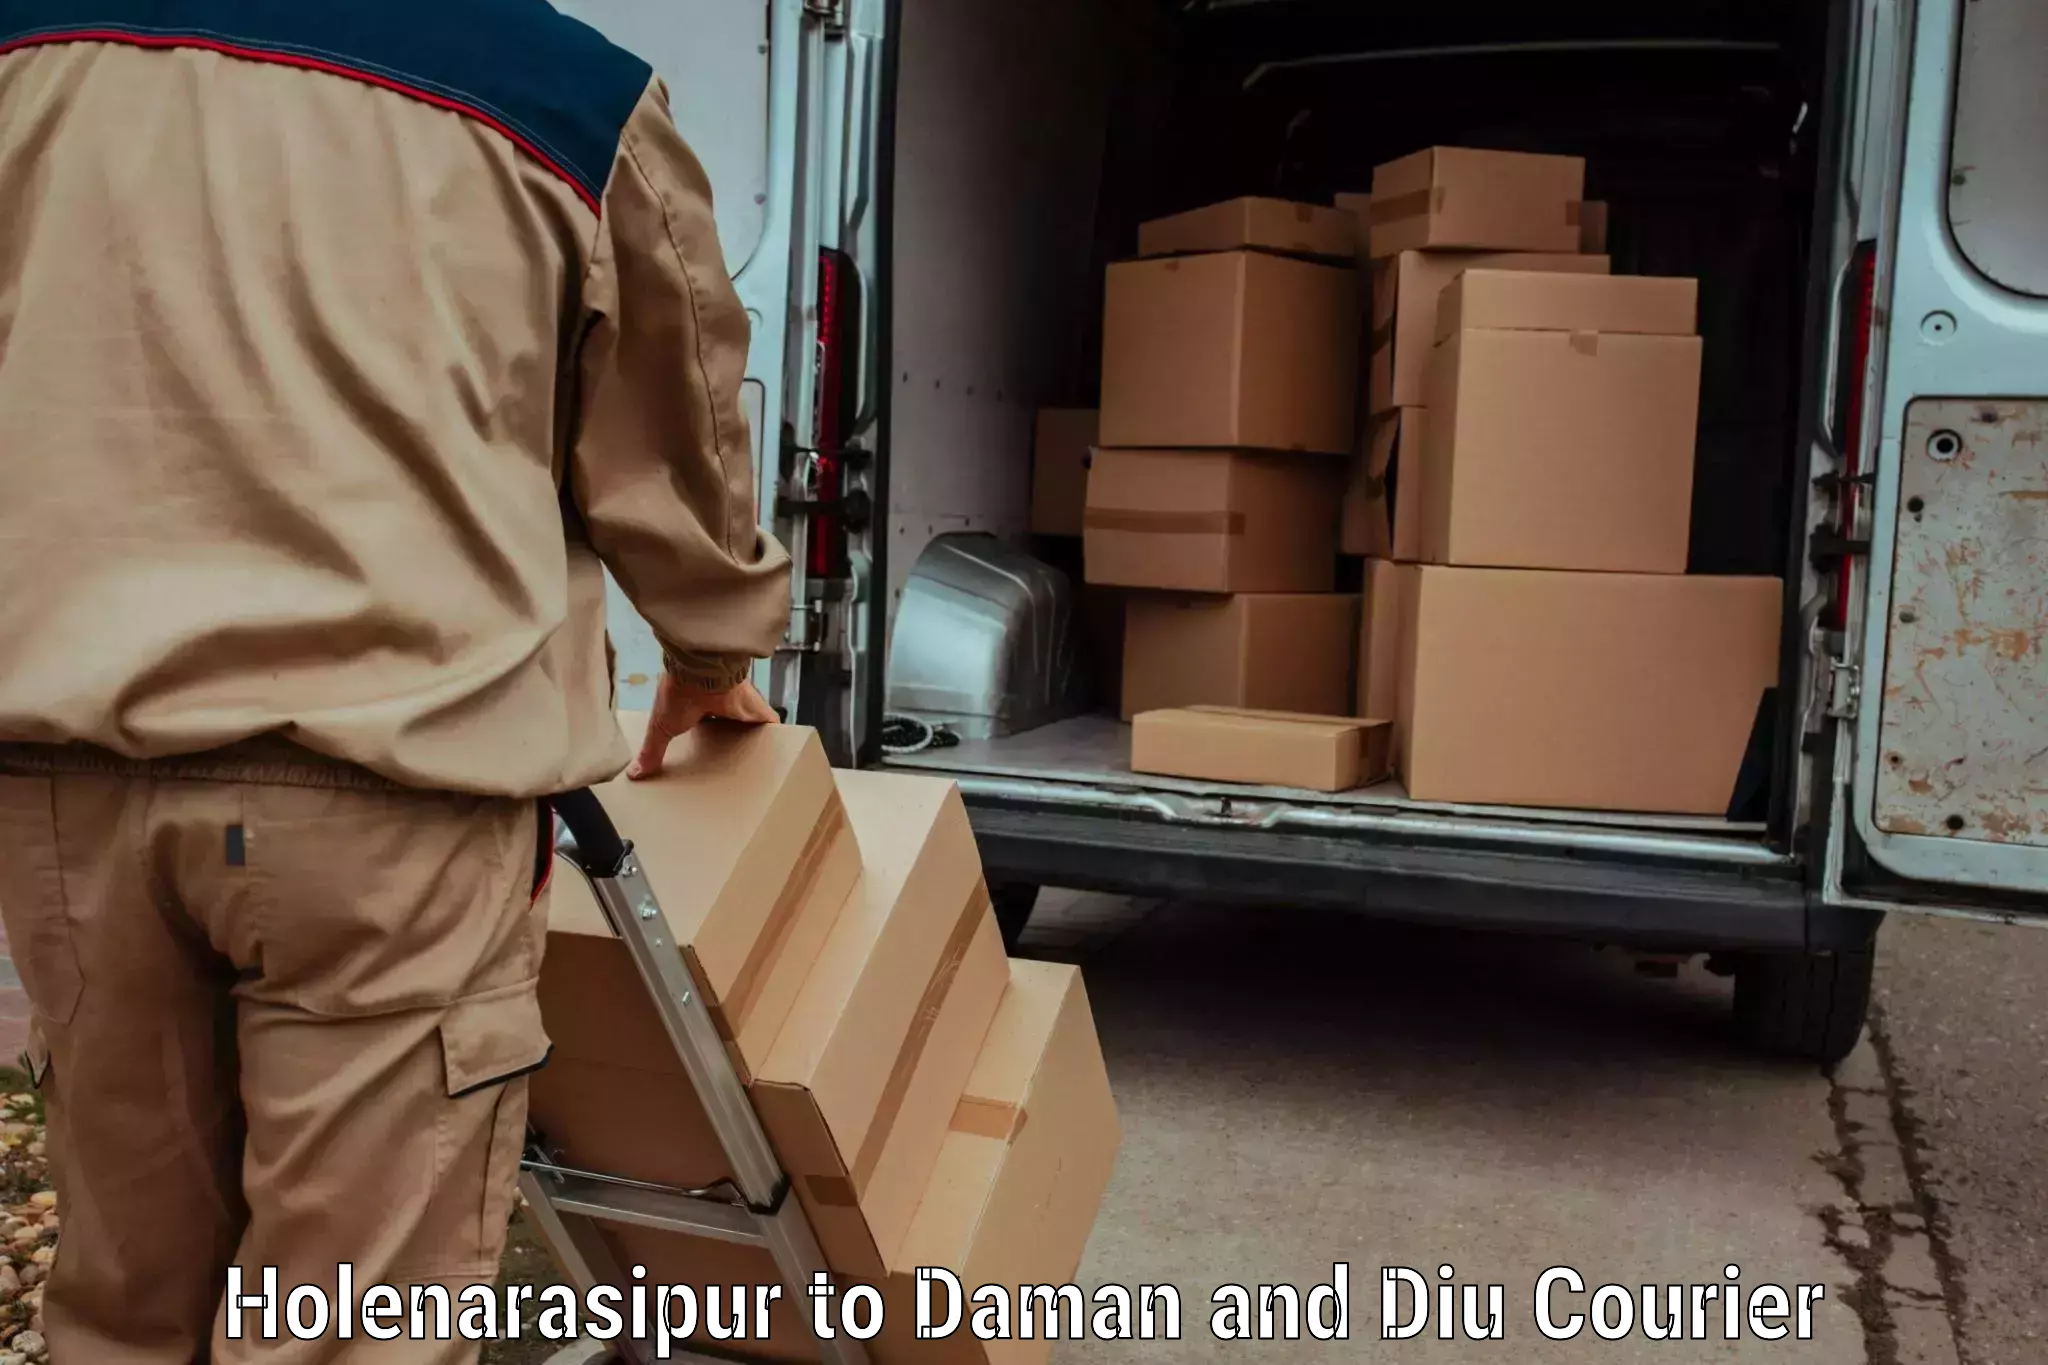 Luggage transit service Holenarasipur to Daman and Diu